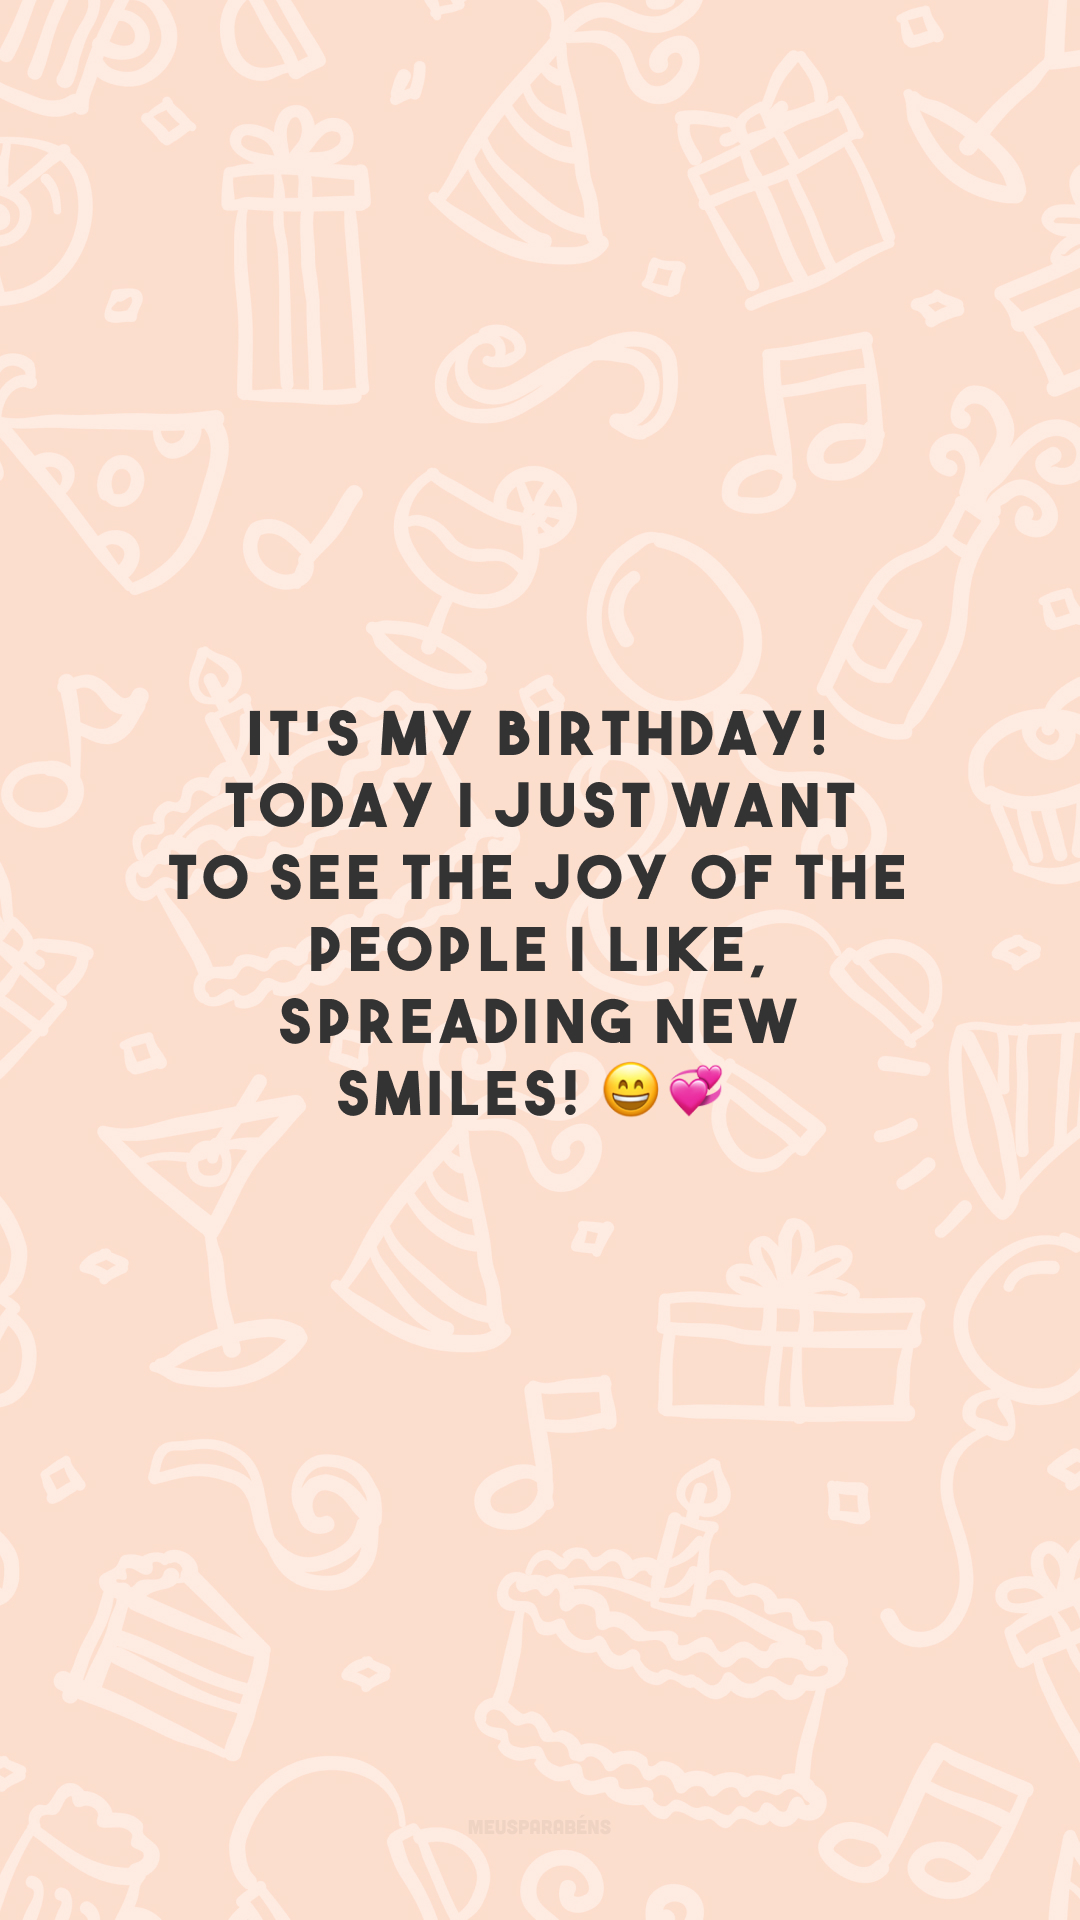 It's my birthday! Today I just want to see the joy of the people I like, spreading new smiles! 😄💞

<p>(É meu aniversário! Hoje só quero ver a alegria das pessoas que eu gosto contagiando novos sorrisos!)<p>